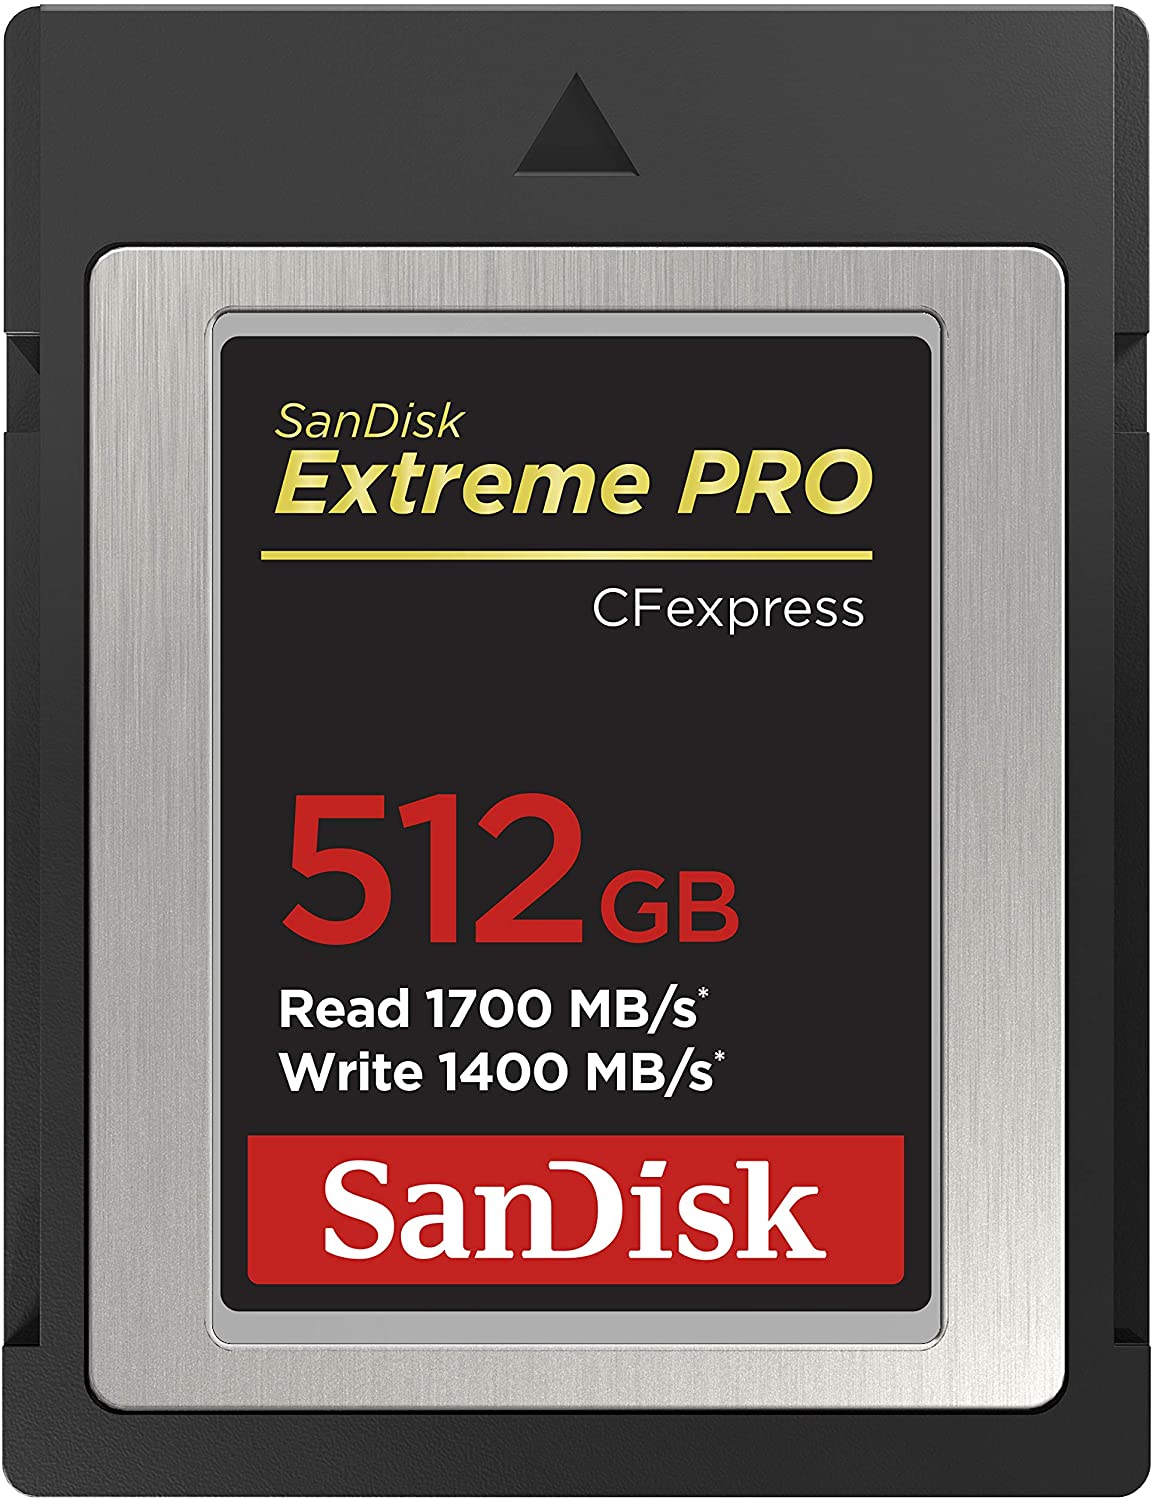 Les Cartes CF Express restent chères : ici la Sandisk de 512 Go. Des cartes indispensables pour les professionnels.